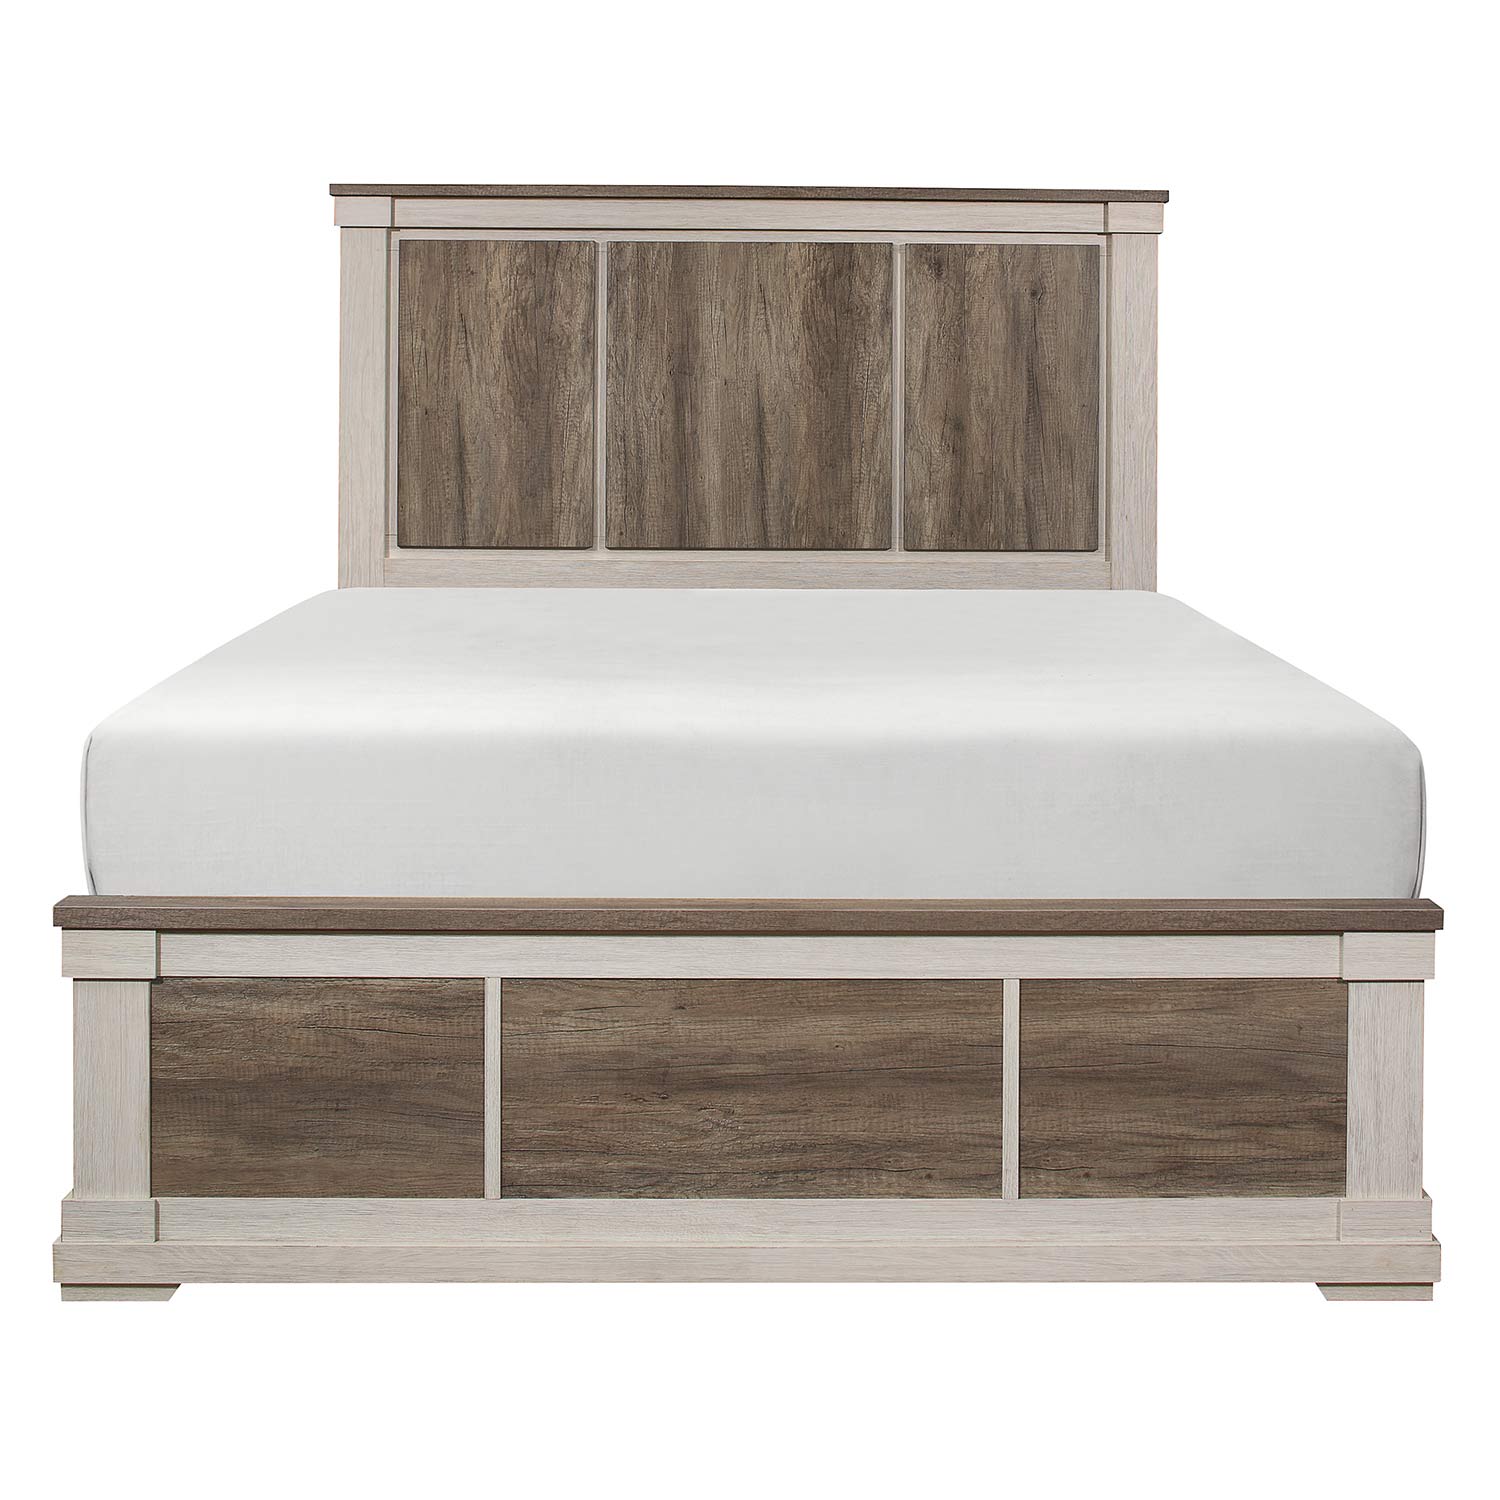 Homelegance Arcadia Bed - White Framing and Variegated Gray Printed Faux-Wood Grain Veneer